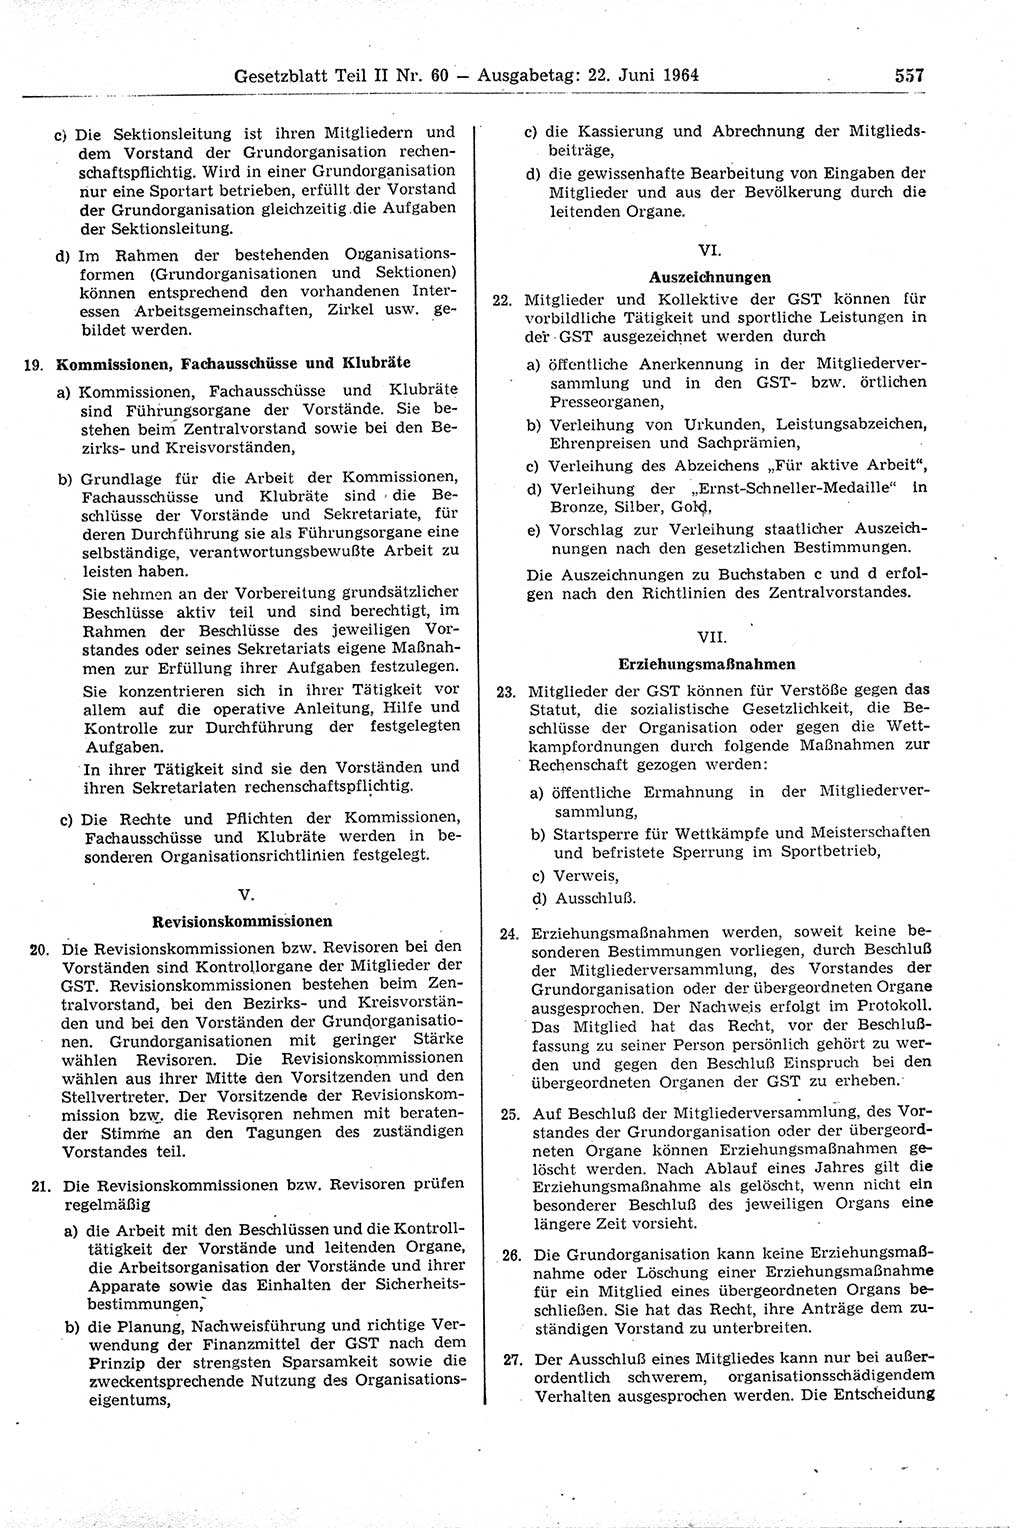 Gesetzblatt (GBl.) der Deutschen Demokratischen Republik (DDR) Teil ⅠⅠ 1964, Seite 557 (GBl. DDR ⅠⅠ 1964, S. 557)